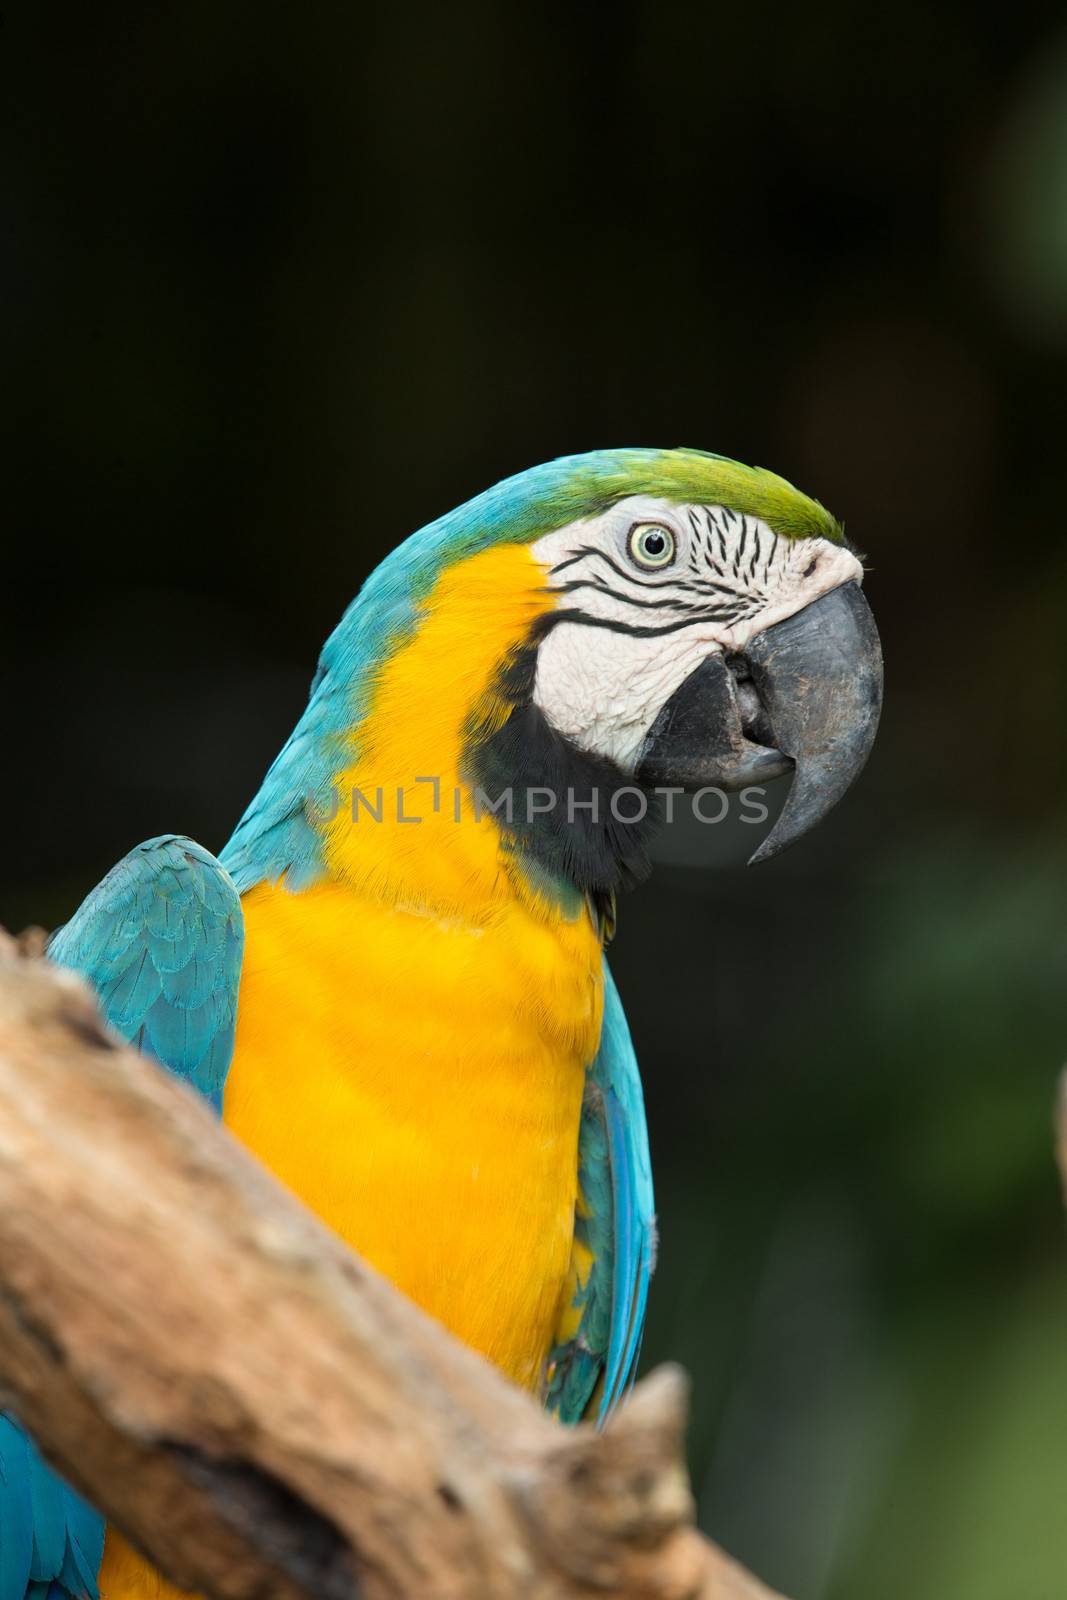  Macaws parrots by Pakhnyushchyy